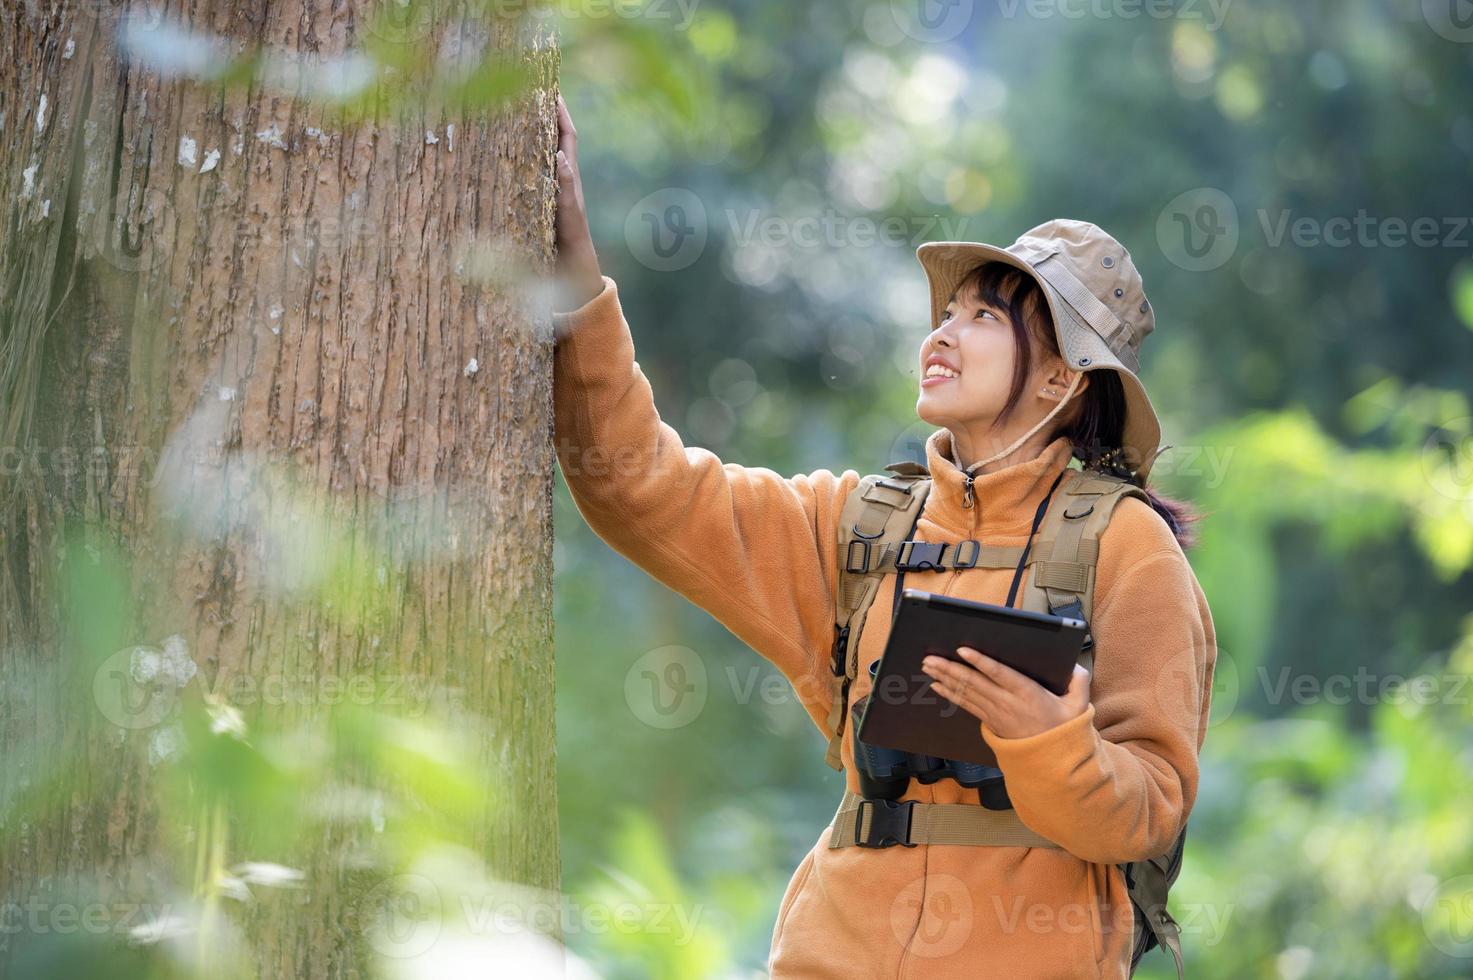 jovem turista com um casaco amarelo abraçando uma árvore na floresta do amor ecológico olhando para as copas das árvores jovem asiática examinando uma grande árvore ecológica foto